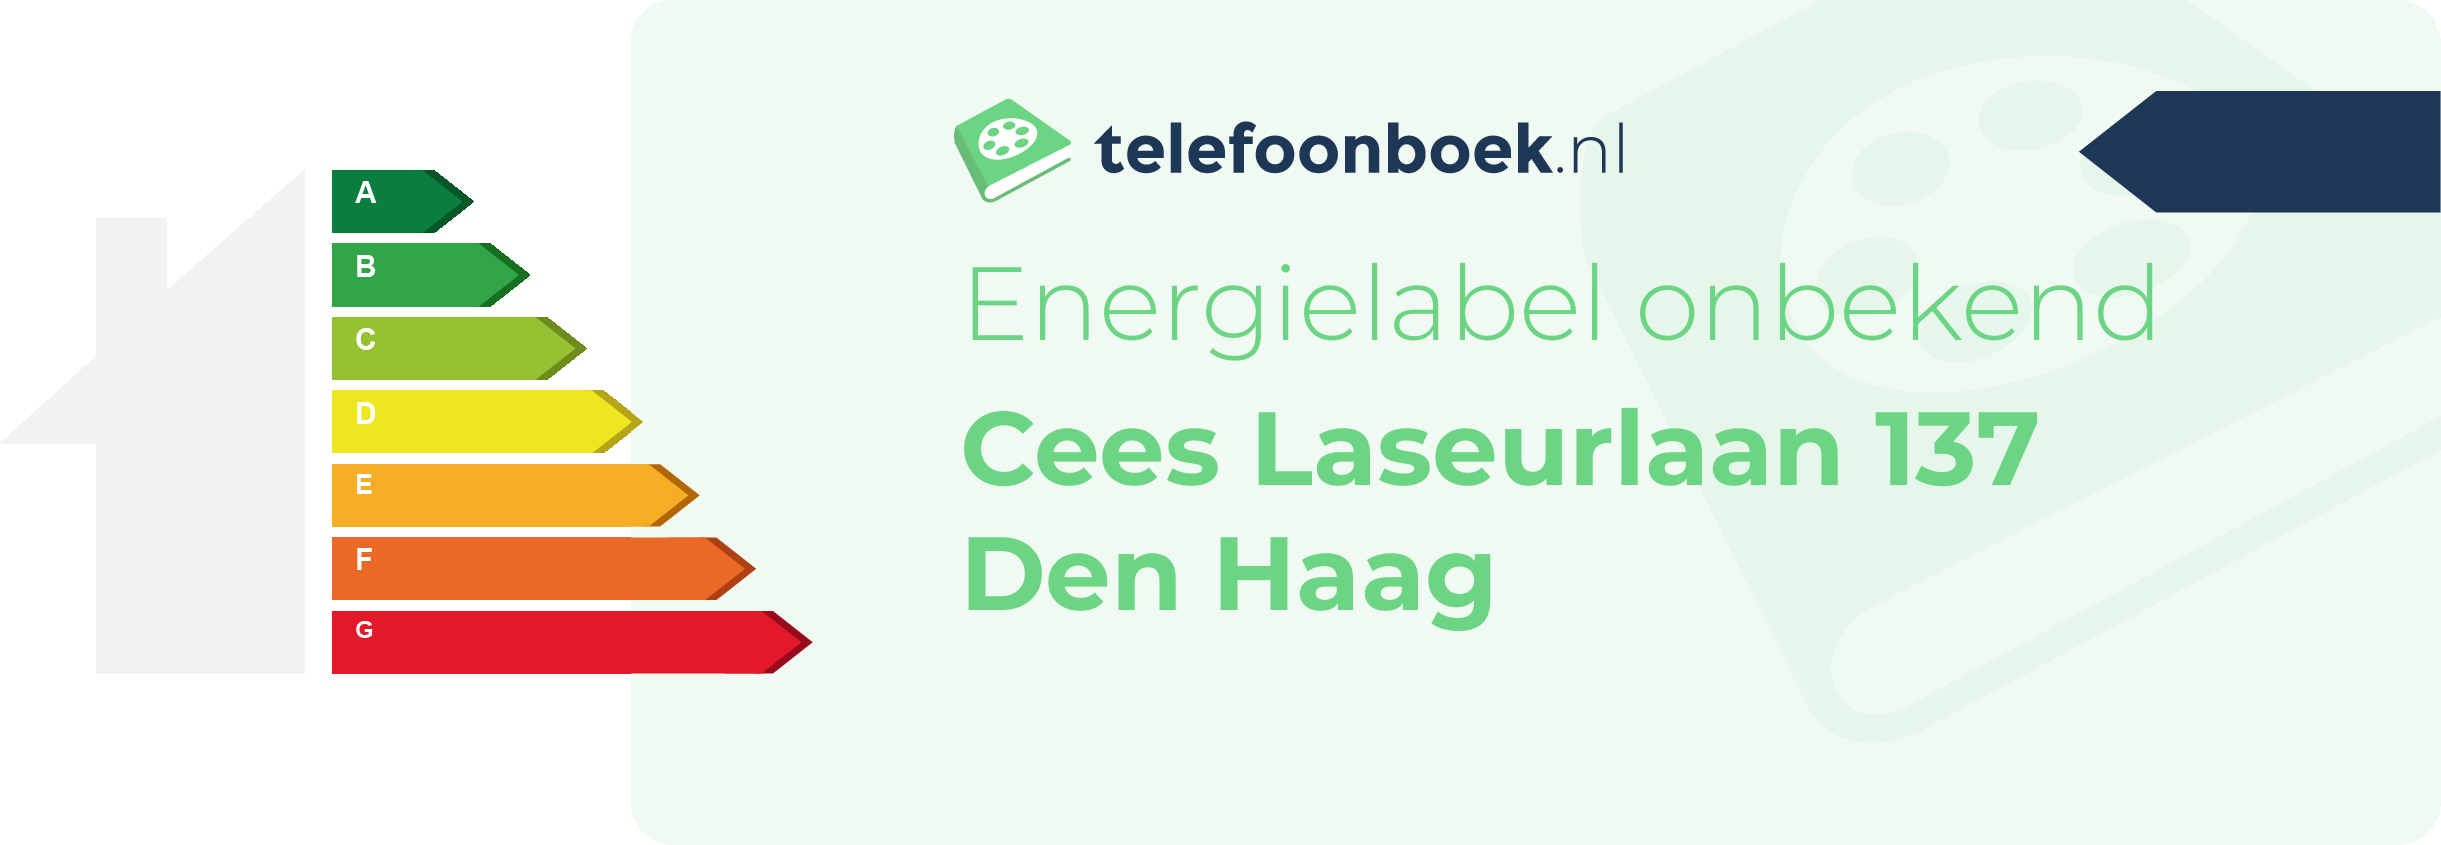 Energielabel Cees Laseurlaan 137 Den Haag